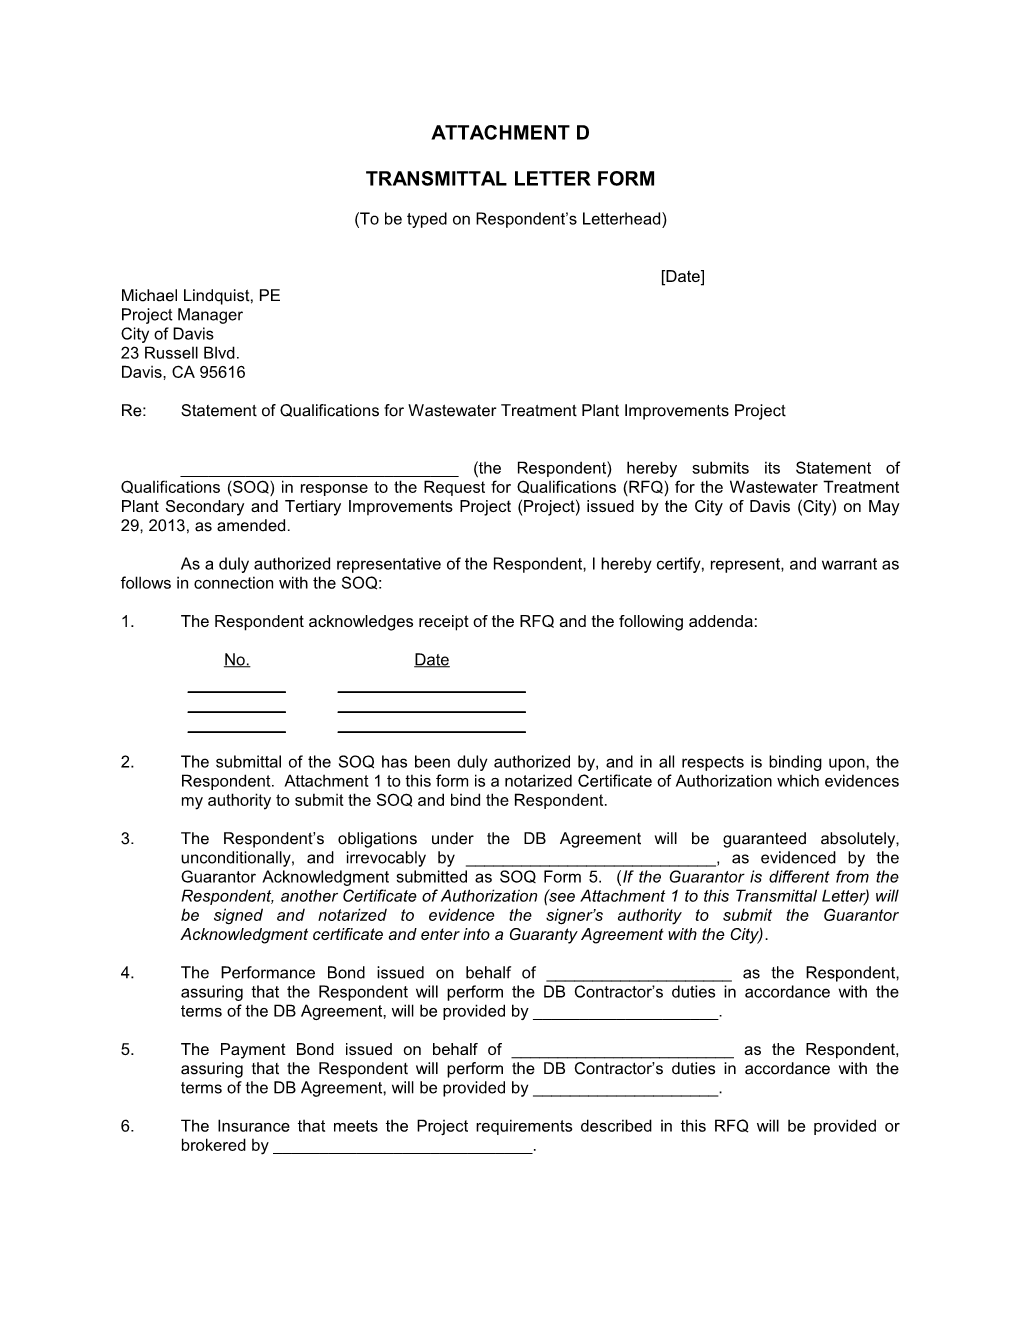 Transmittal Letter Form